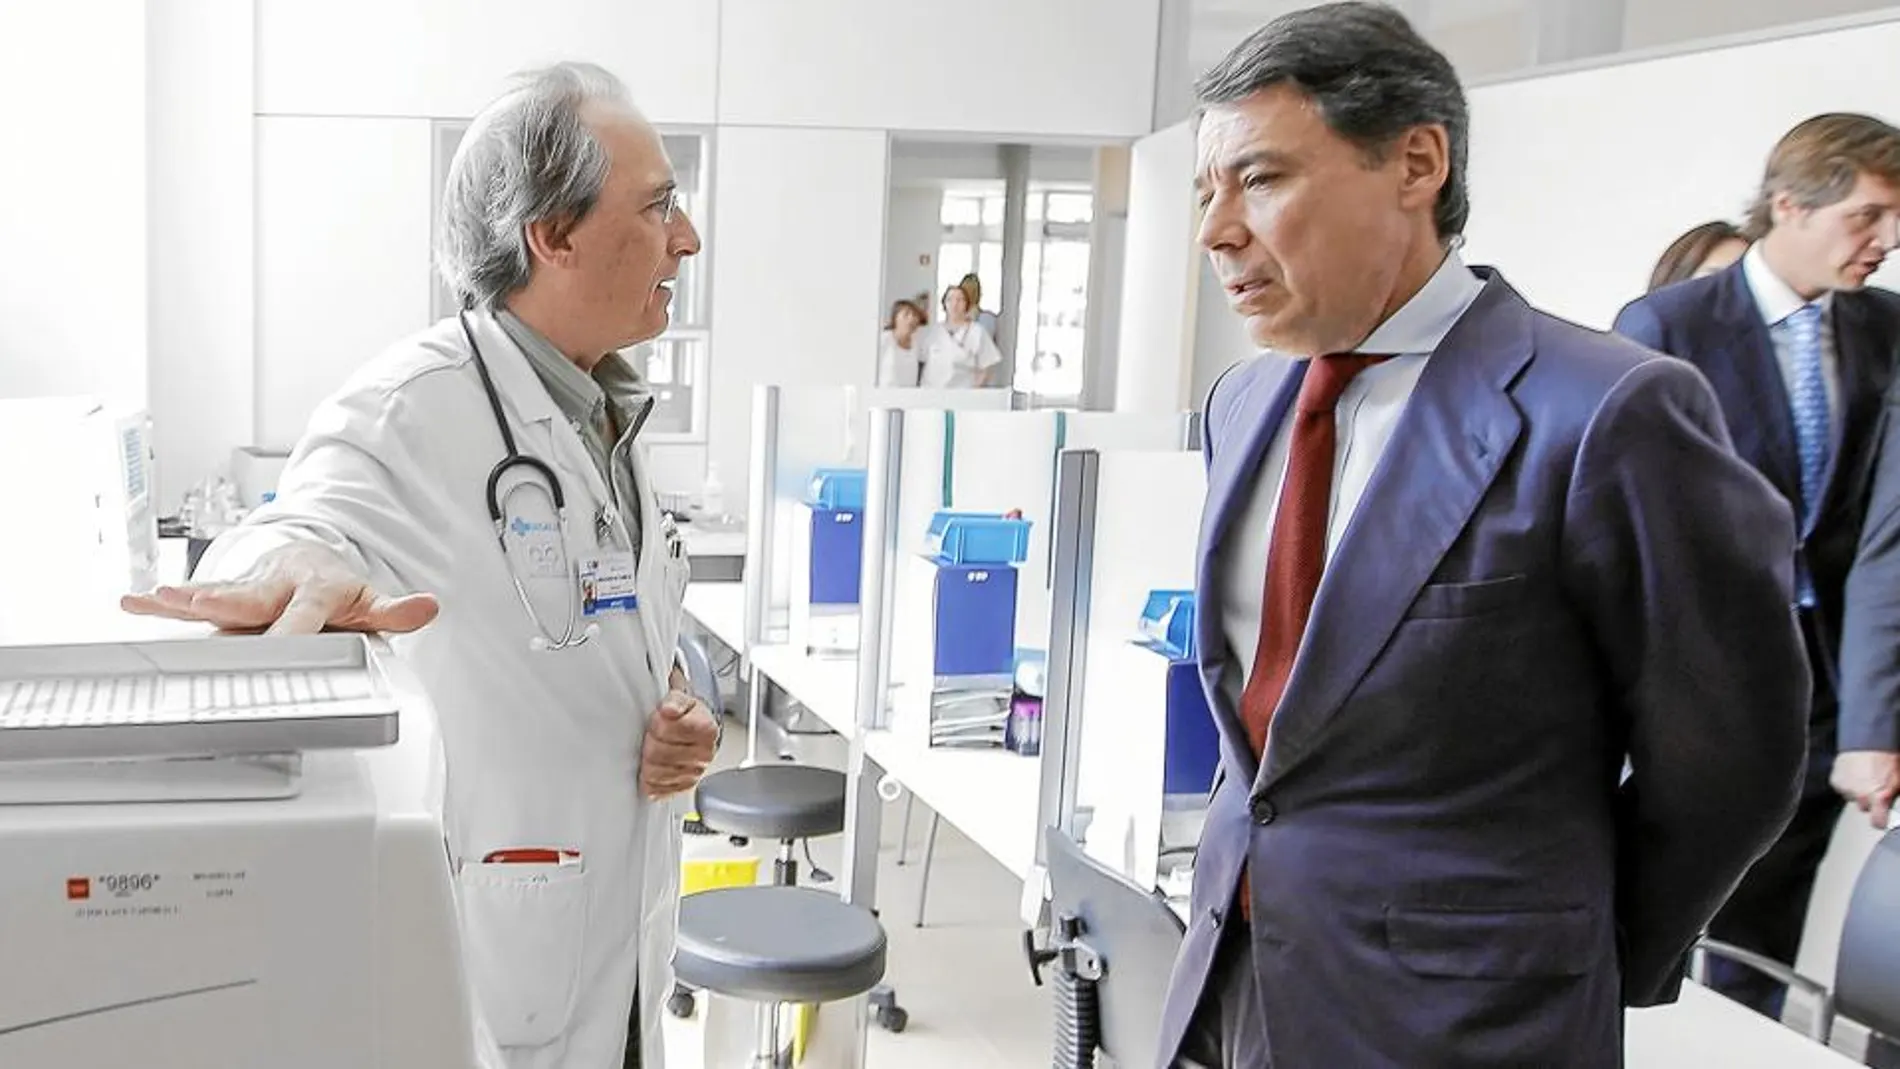 González inauguró ayer el nuevo centro de salud «Infante Don Luis de Borbón», en Boadilla del Monte